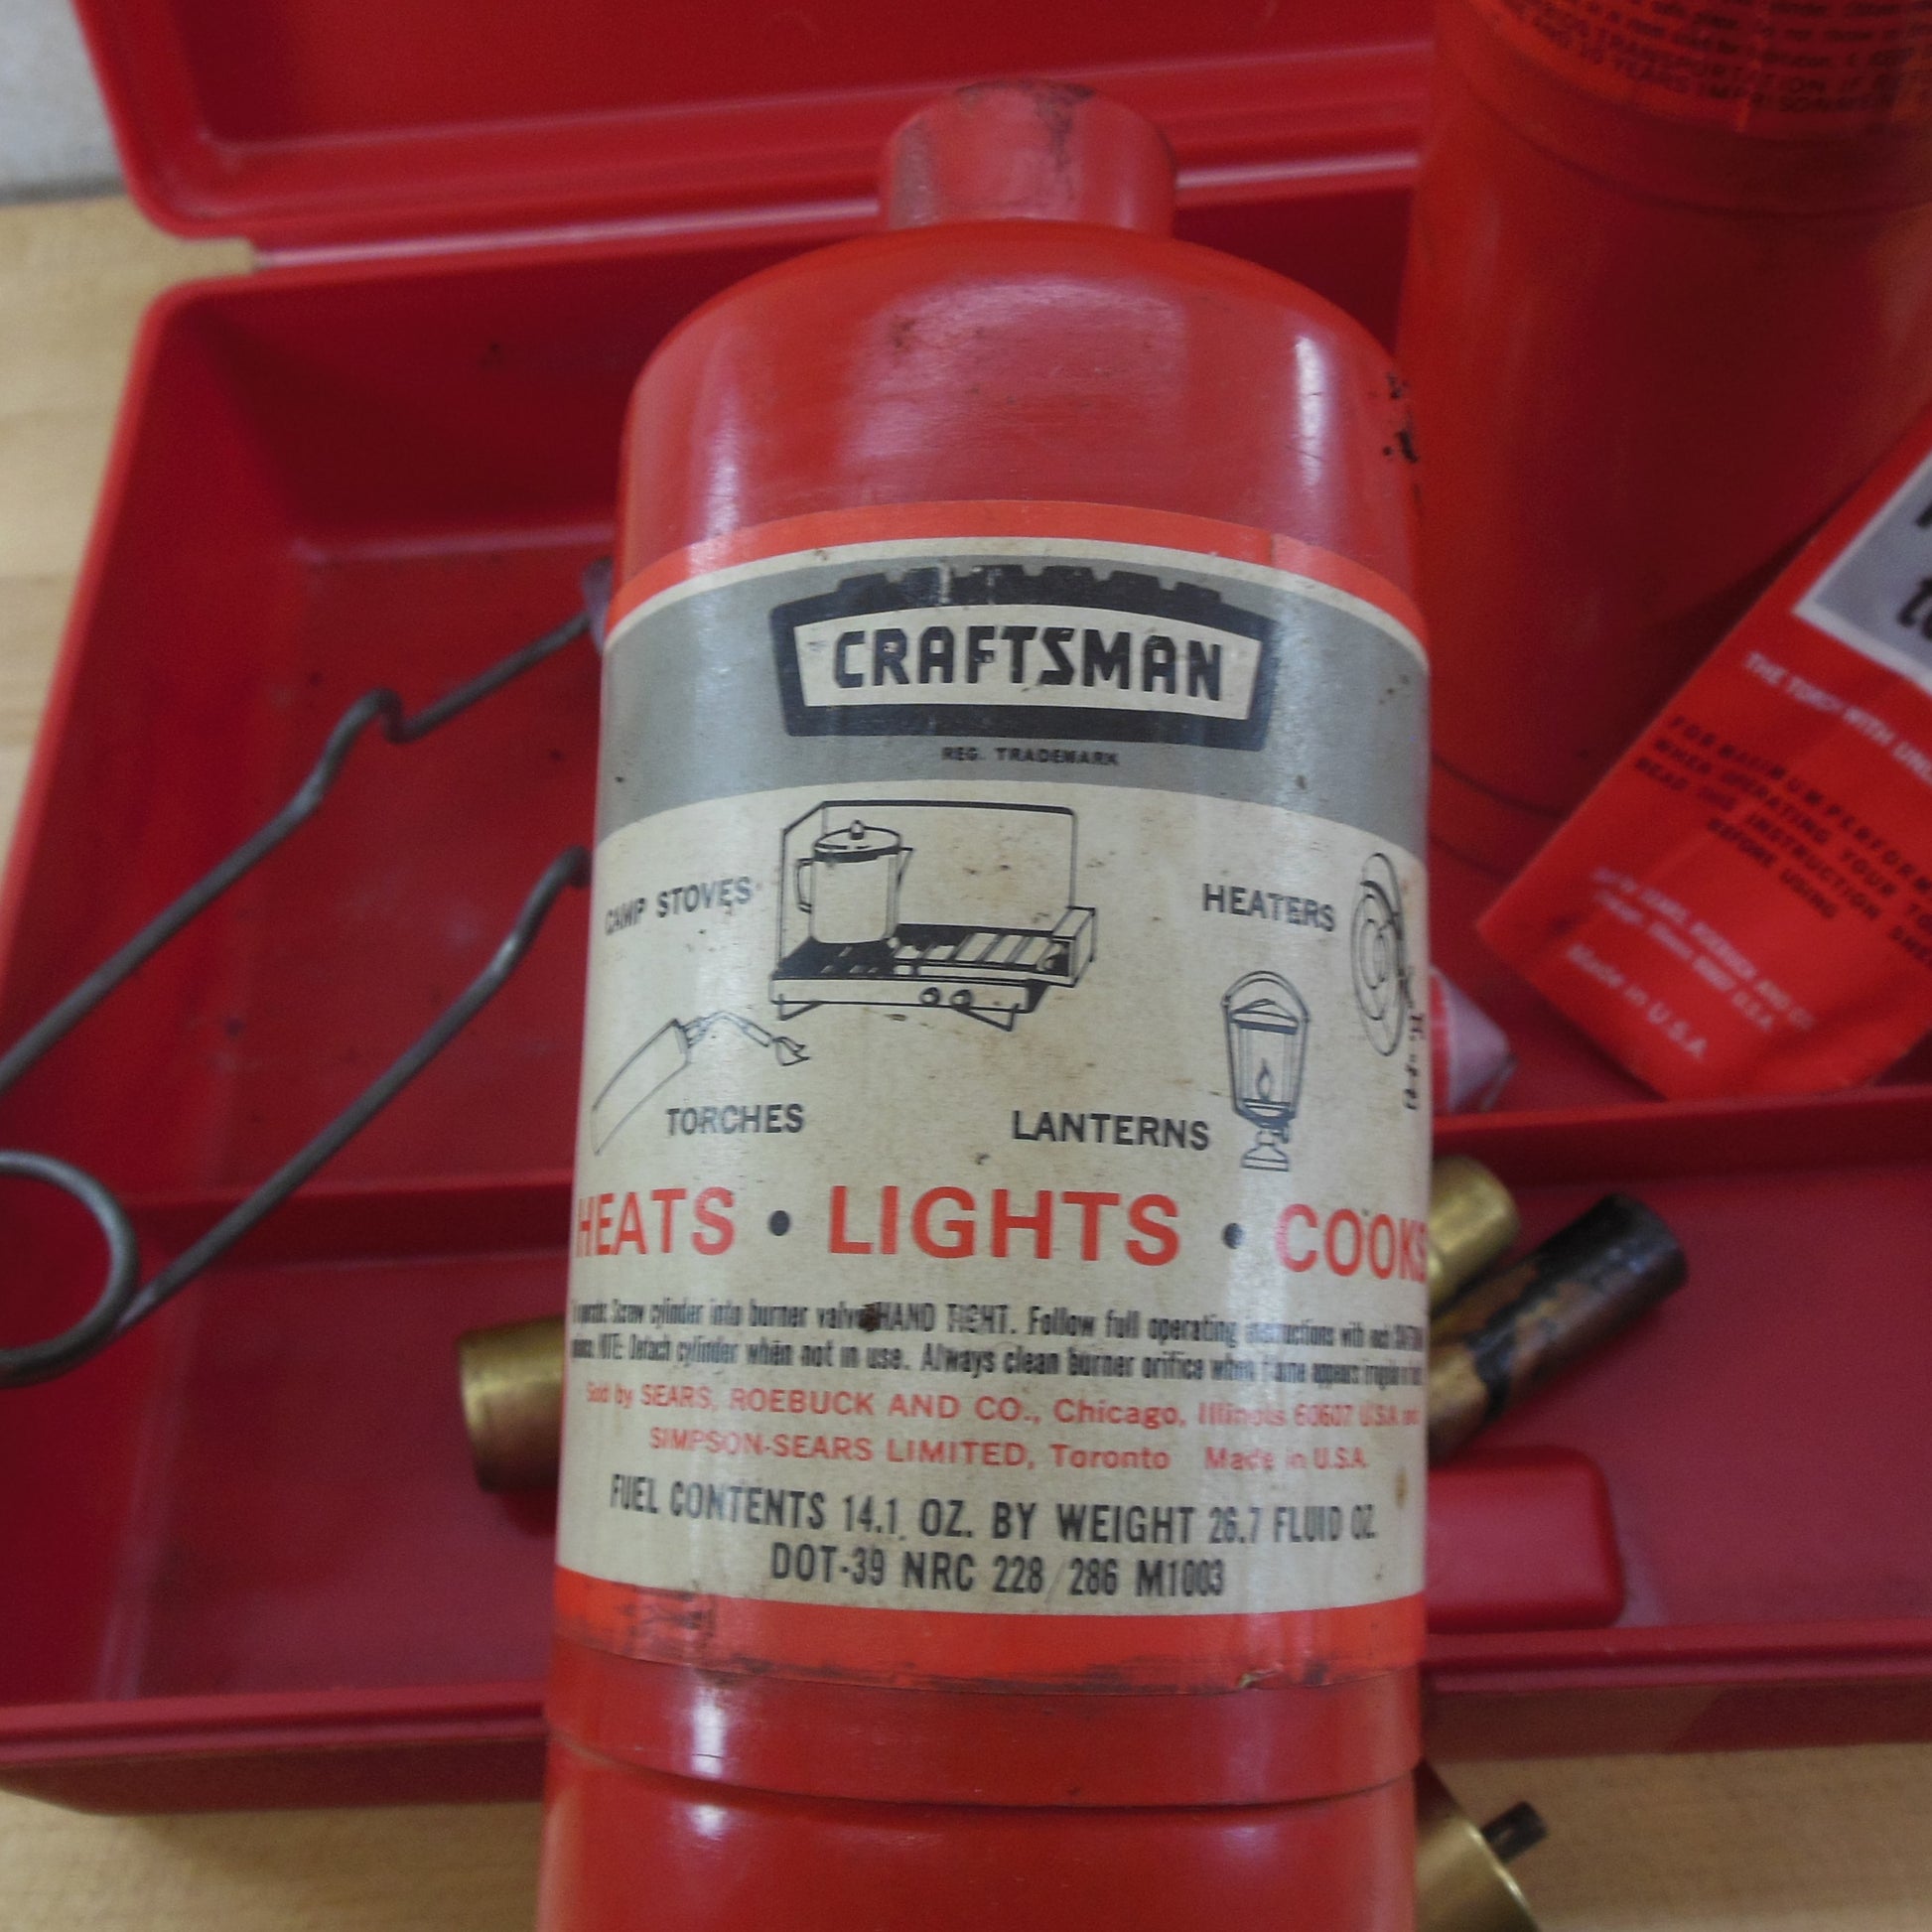 Sears Craftsman Multi-Purpose Propane Torch Set Bottles Red Case vintage